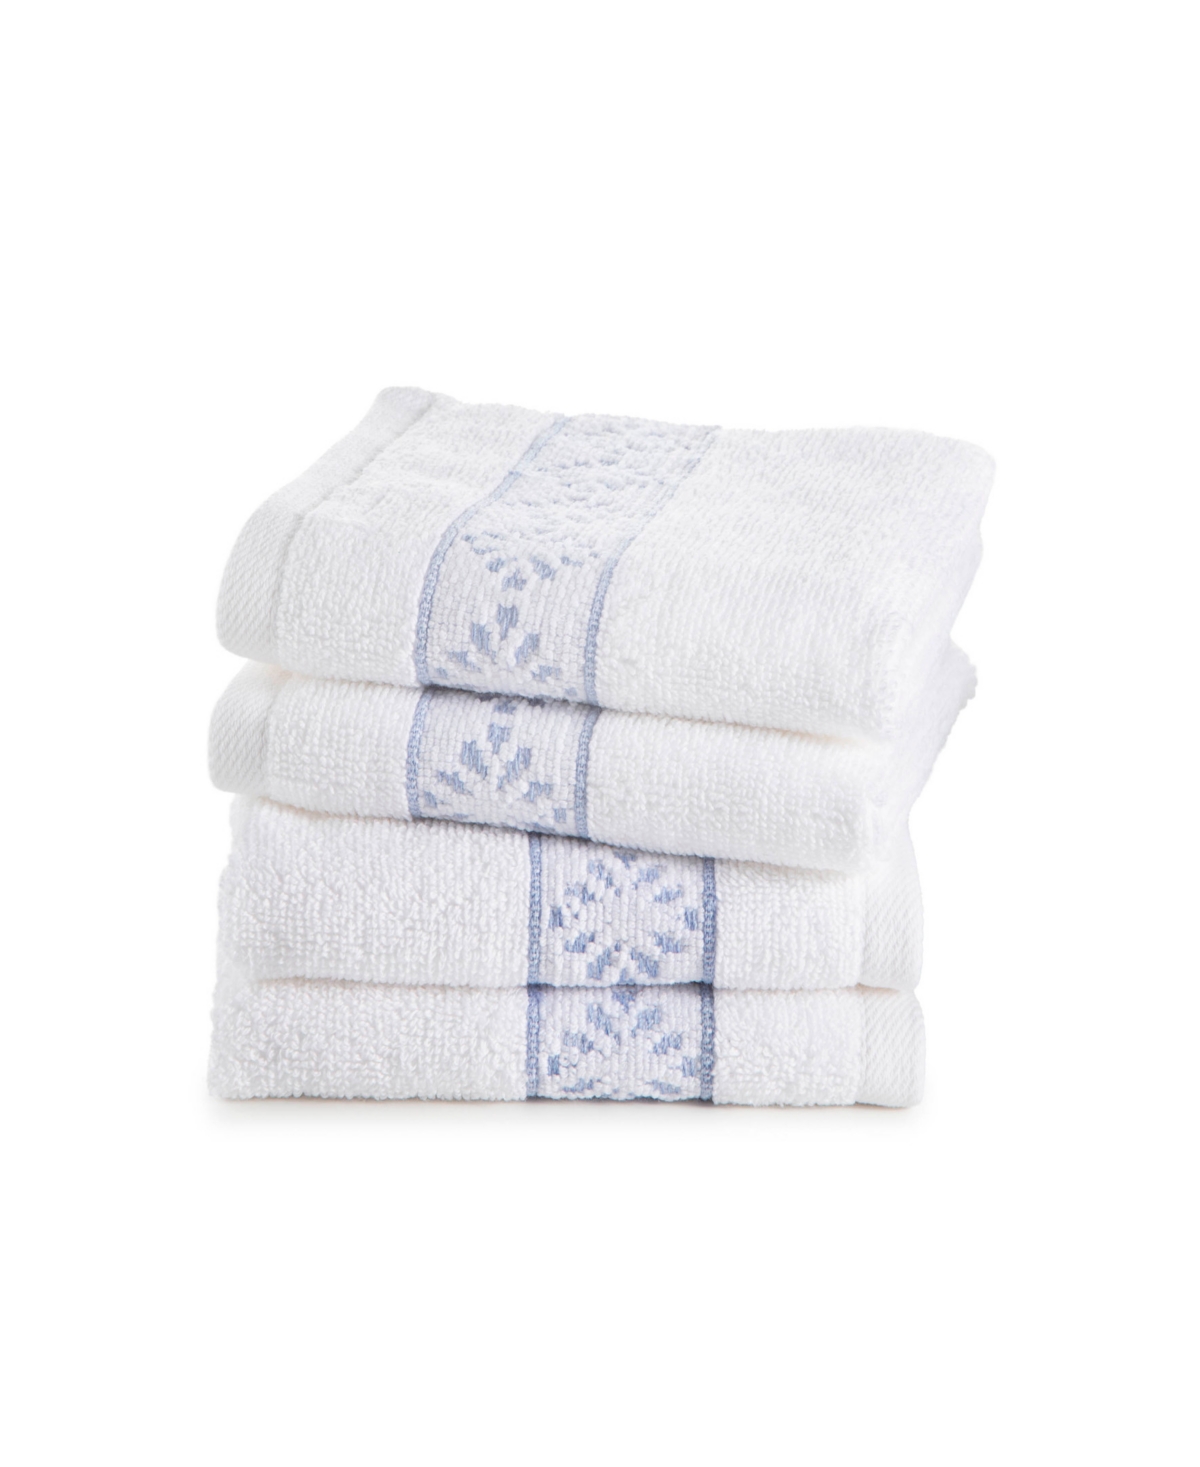 Clean Design Home X Martex Allergen-resistant Savoy 4 Pack Wash Towel Set In White